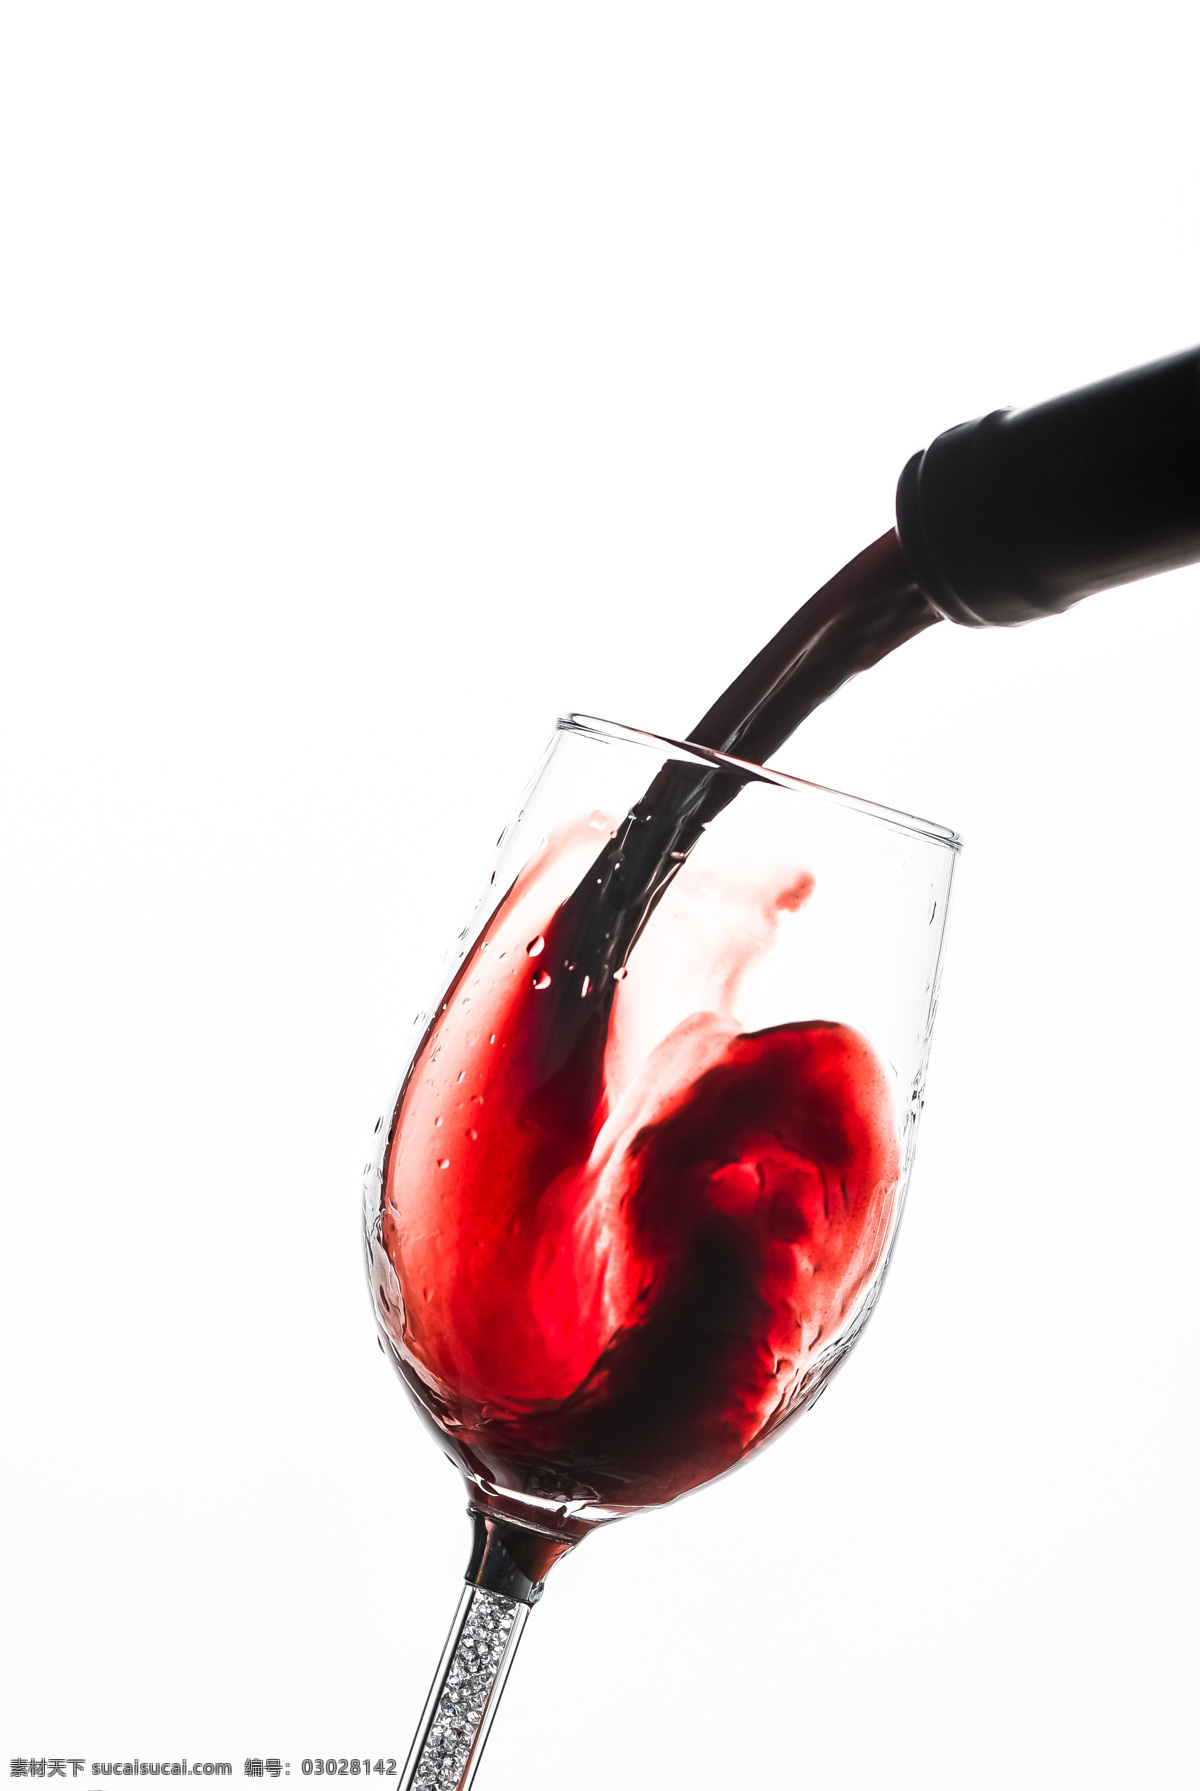 红酒 玻璃杯 葡萄酒 背景 海报 素材图片 饮品 饮料 类 餐饮美食